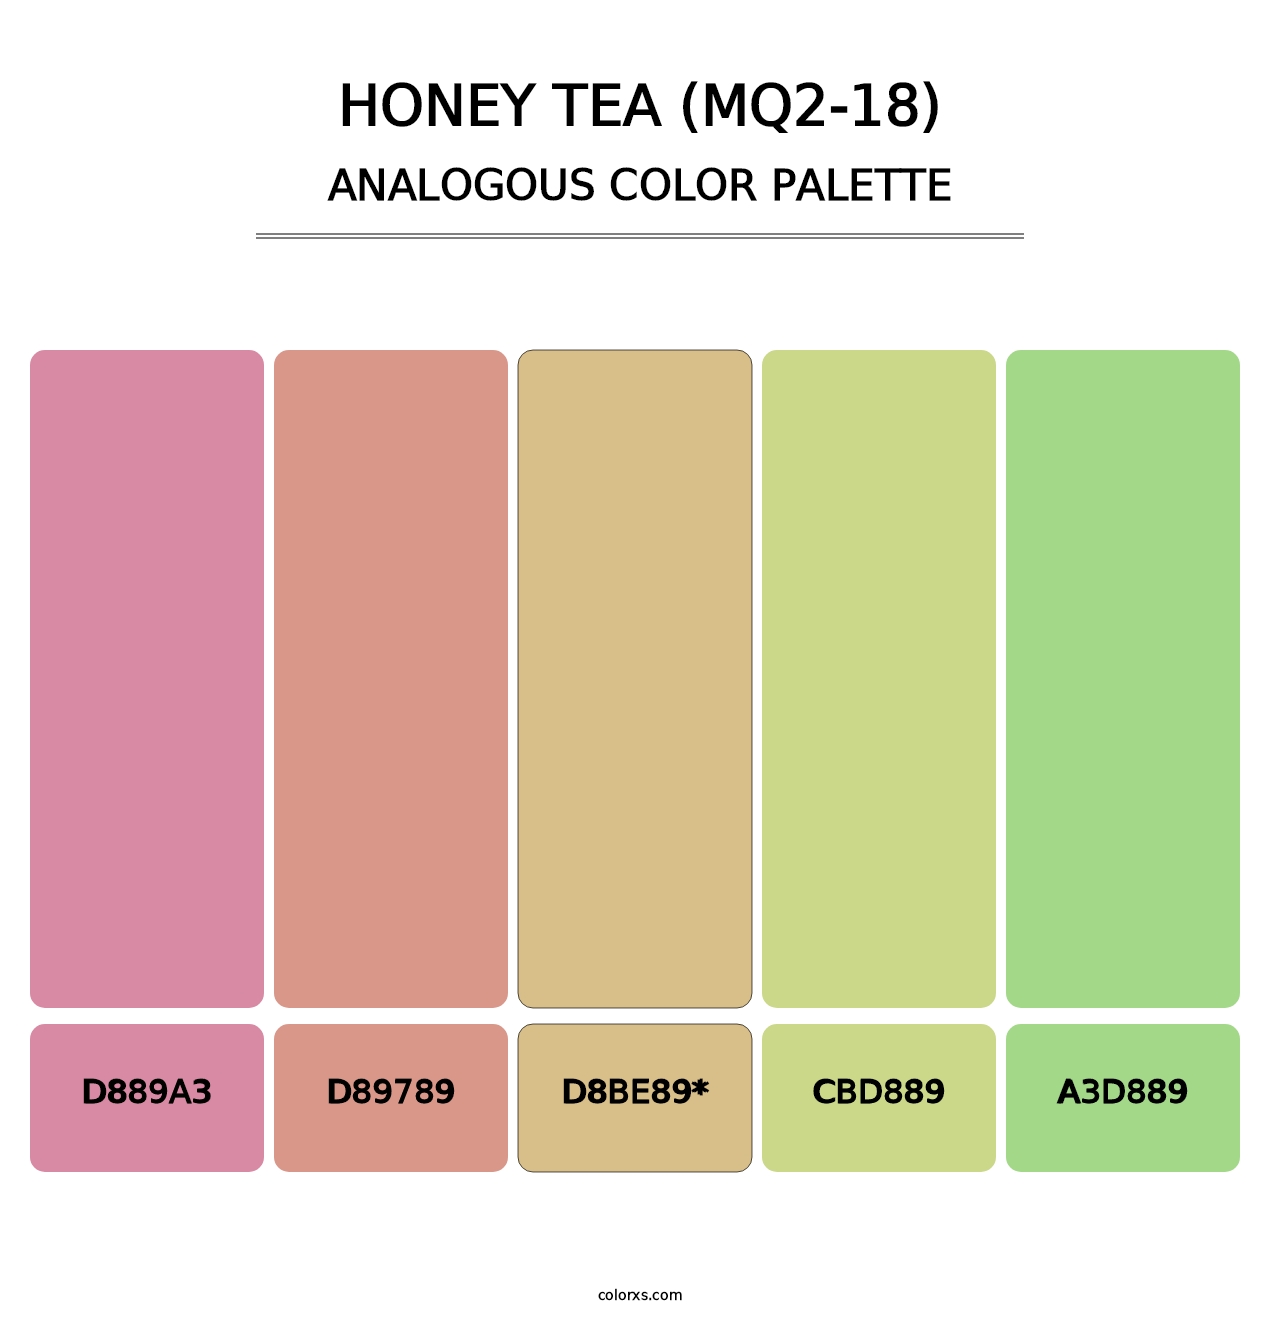 Honey Tea (MQ2-18) - Analogous Color Palette